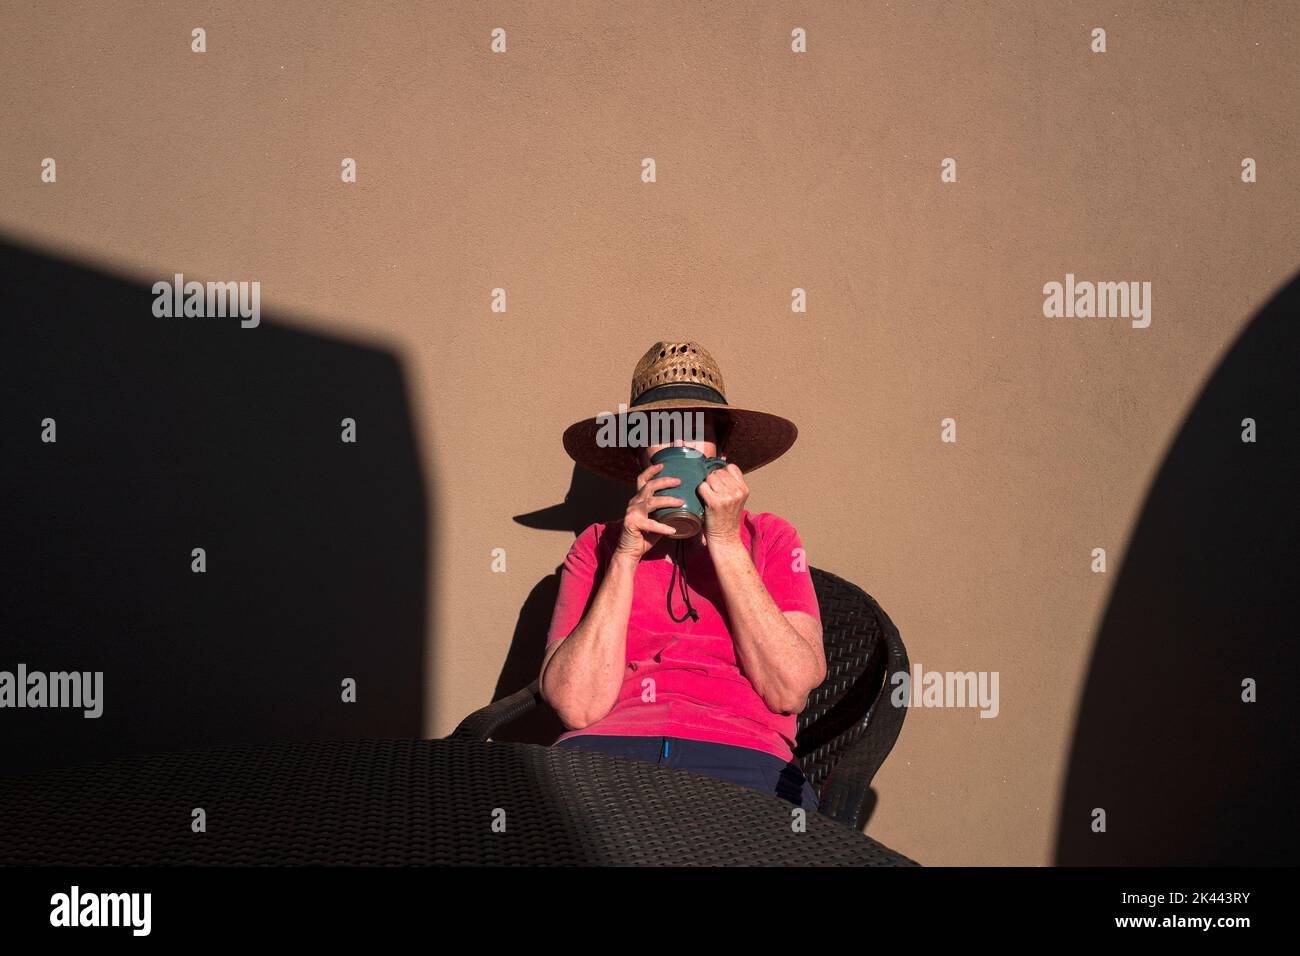 Eine Frau, die Kaffee an der wand von lehmziegeln trinkt, auf einer sonnenbeleuchteten Terrasse Stockfoto